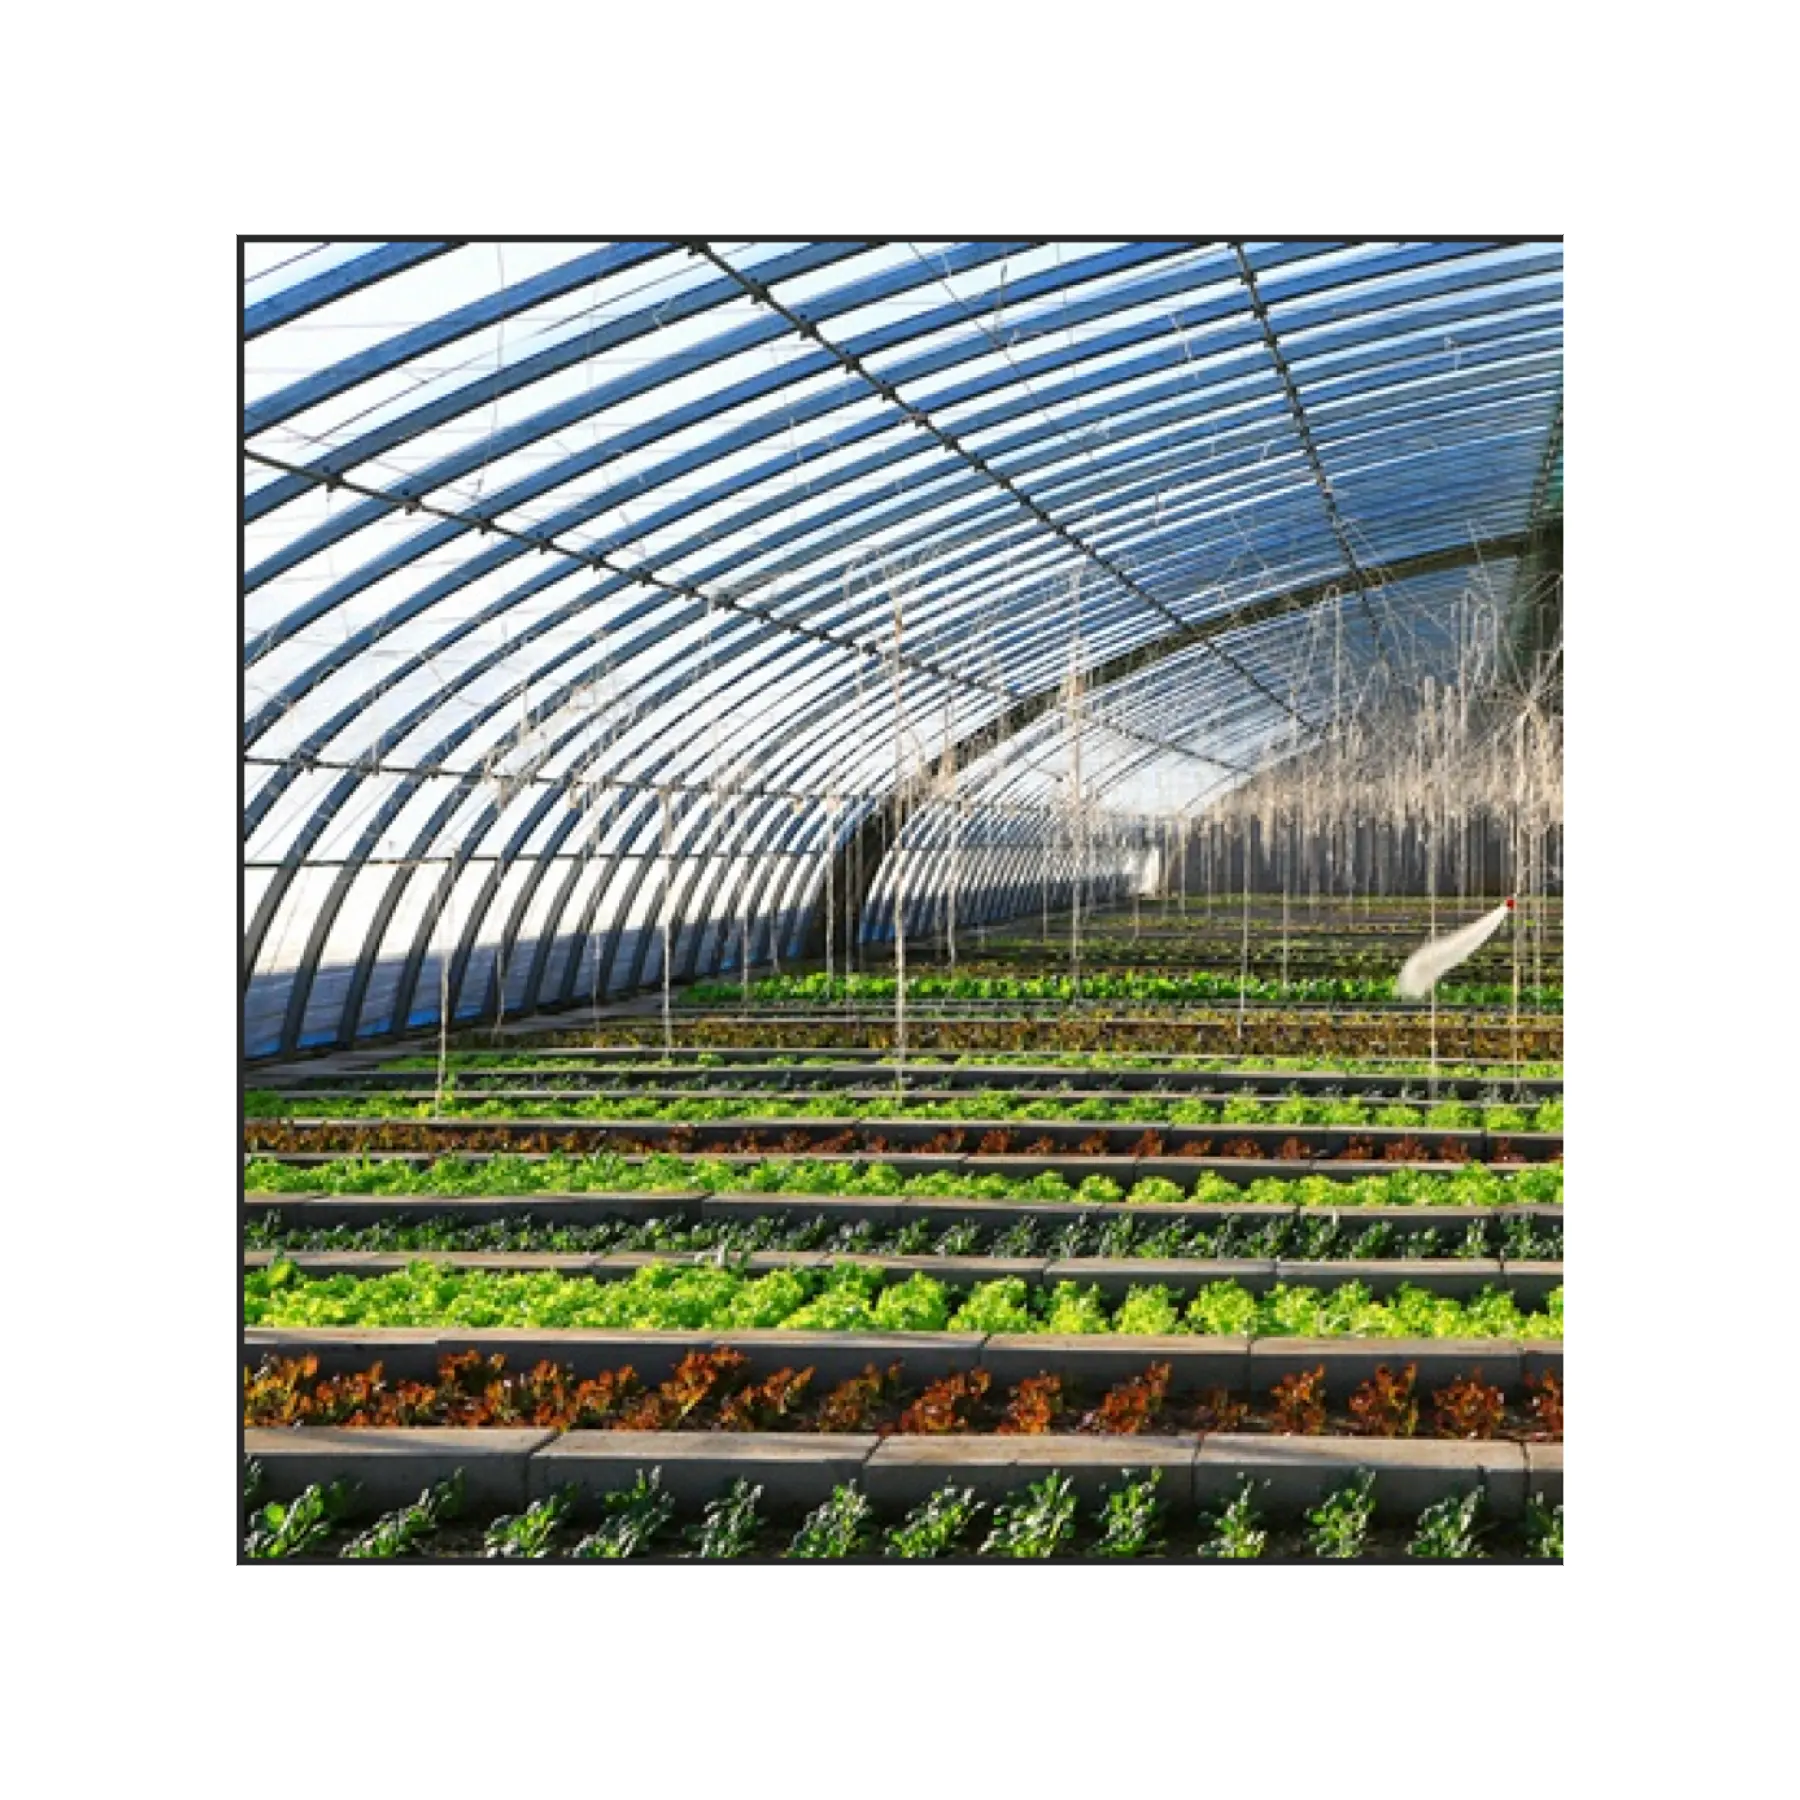 في مخزون المشاريع الزراعية الطماطم الزراعة المائية invernadero البيت الأخضر الدفيئة للبيع